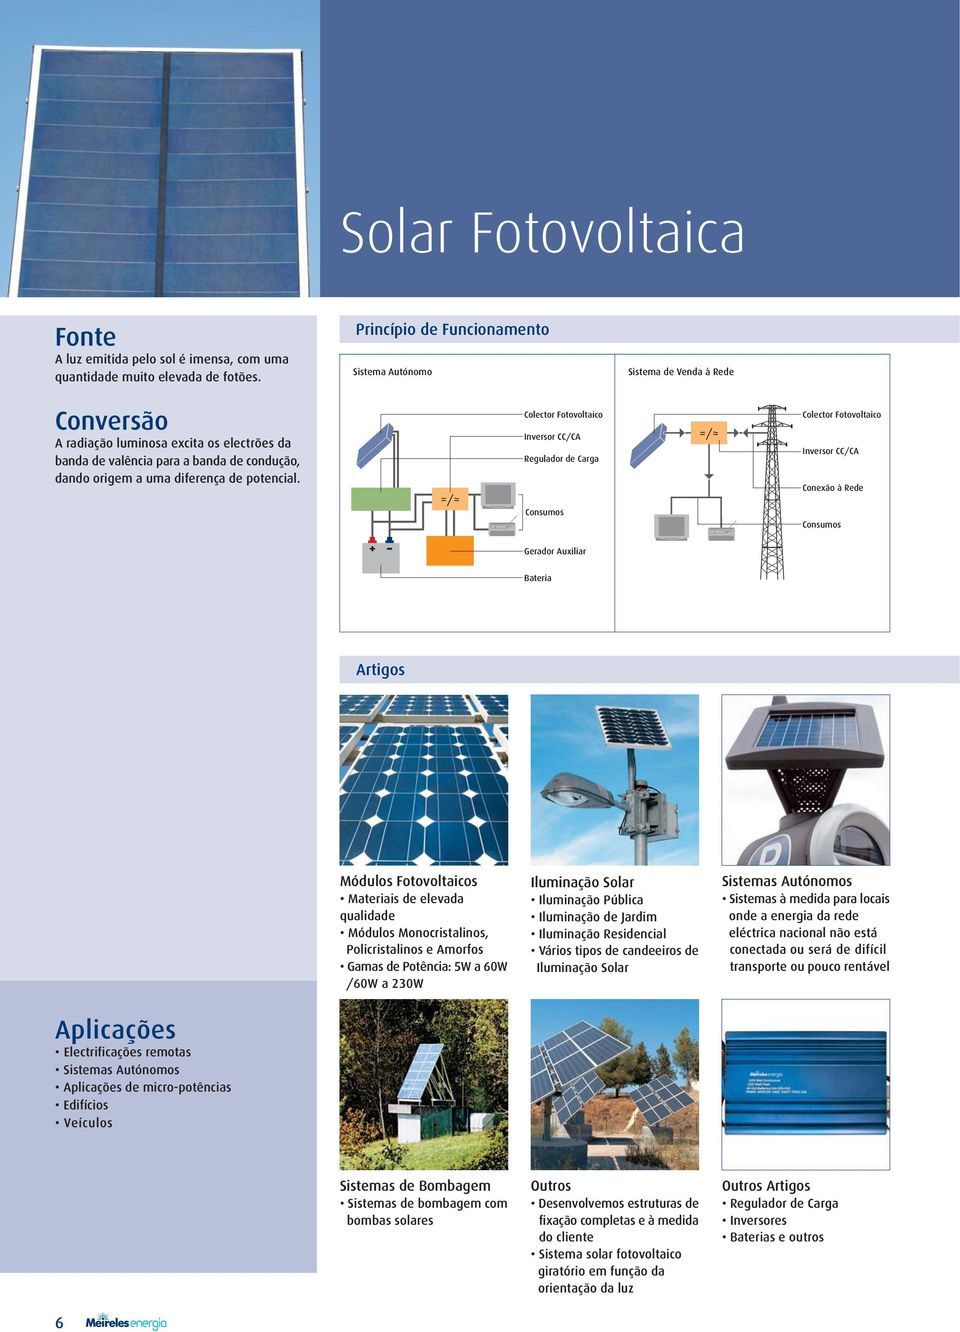 Colector Fotovoltaico Inversor CC/CA Regulador de Carga Consumos Colector Fotovoltaico Inversor CC/CA Conexão à Rede Consumos Gerador Auxiliar Bateria Artigos Módulos Fotovoltaicos Materiais de